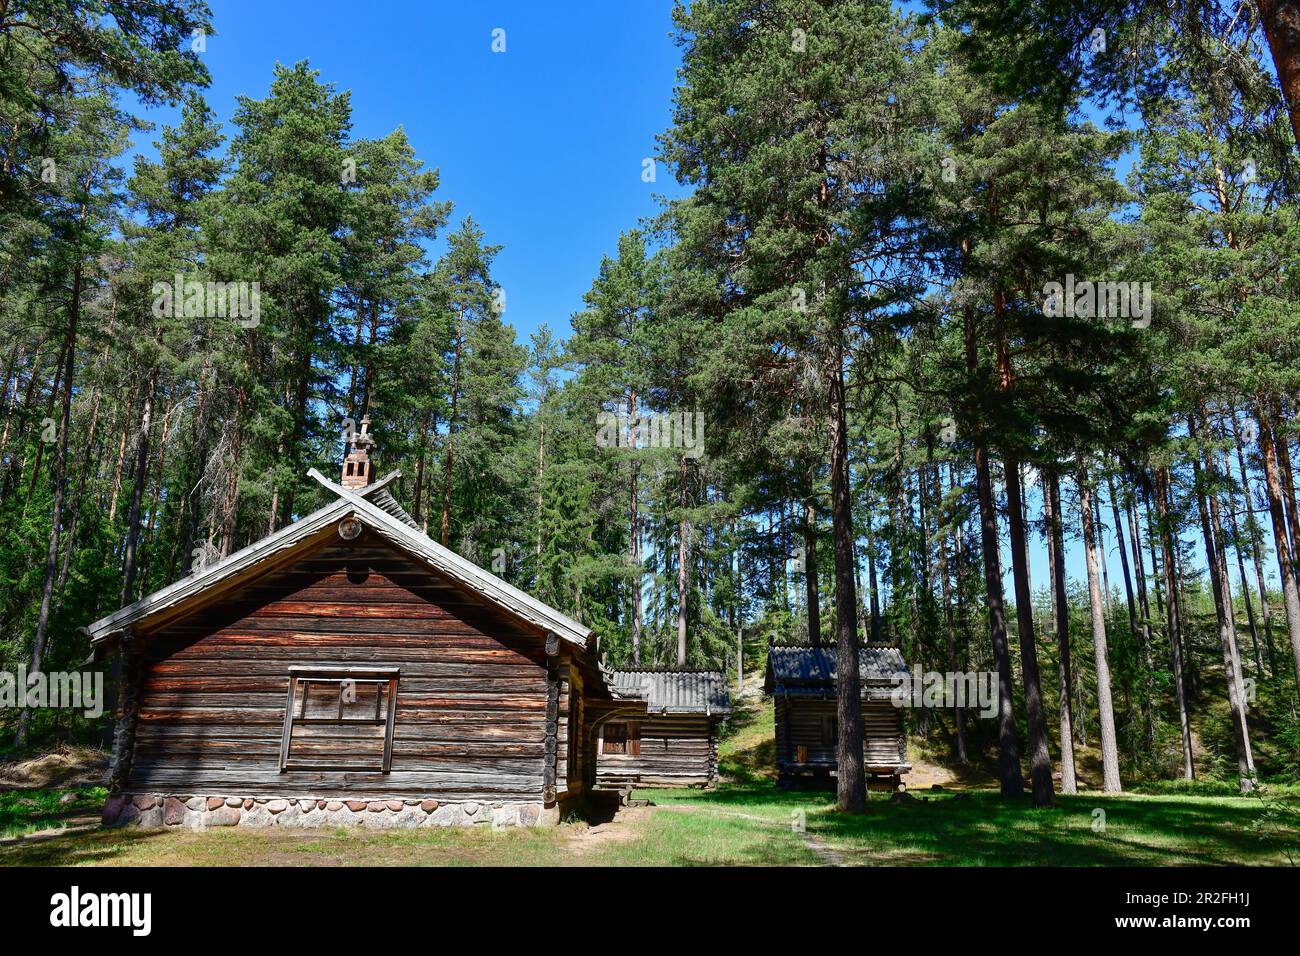 Refuge en bois historique situé dans la forêt, près d'un lac près d'Älvdalen, Dalarna, Suède Banque D'Images